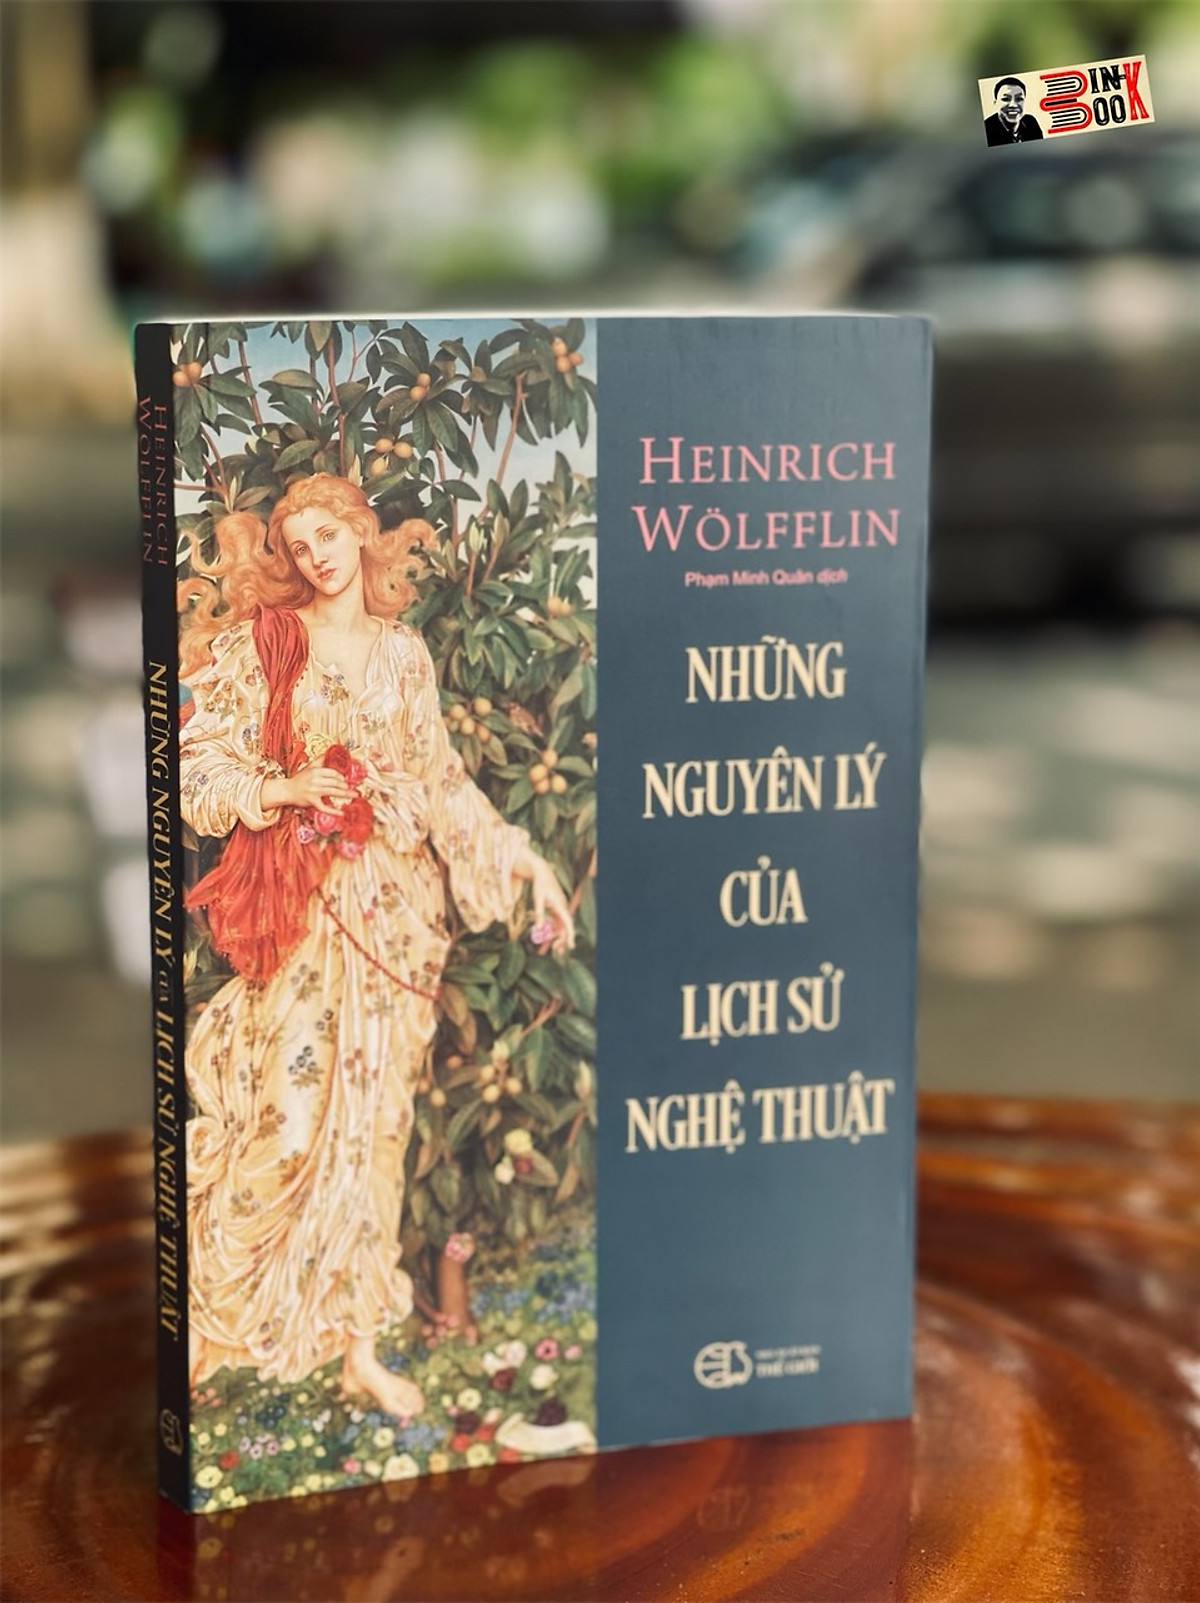 [Tủ sách Văn hóa học] NHỮNG NGUYÊN LÝ CỦA LỊCH SỬ NGHỆ THUẬT - Heinrich Wölfflin – Song Thủy Bookstore